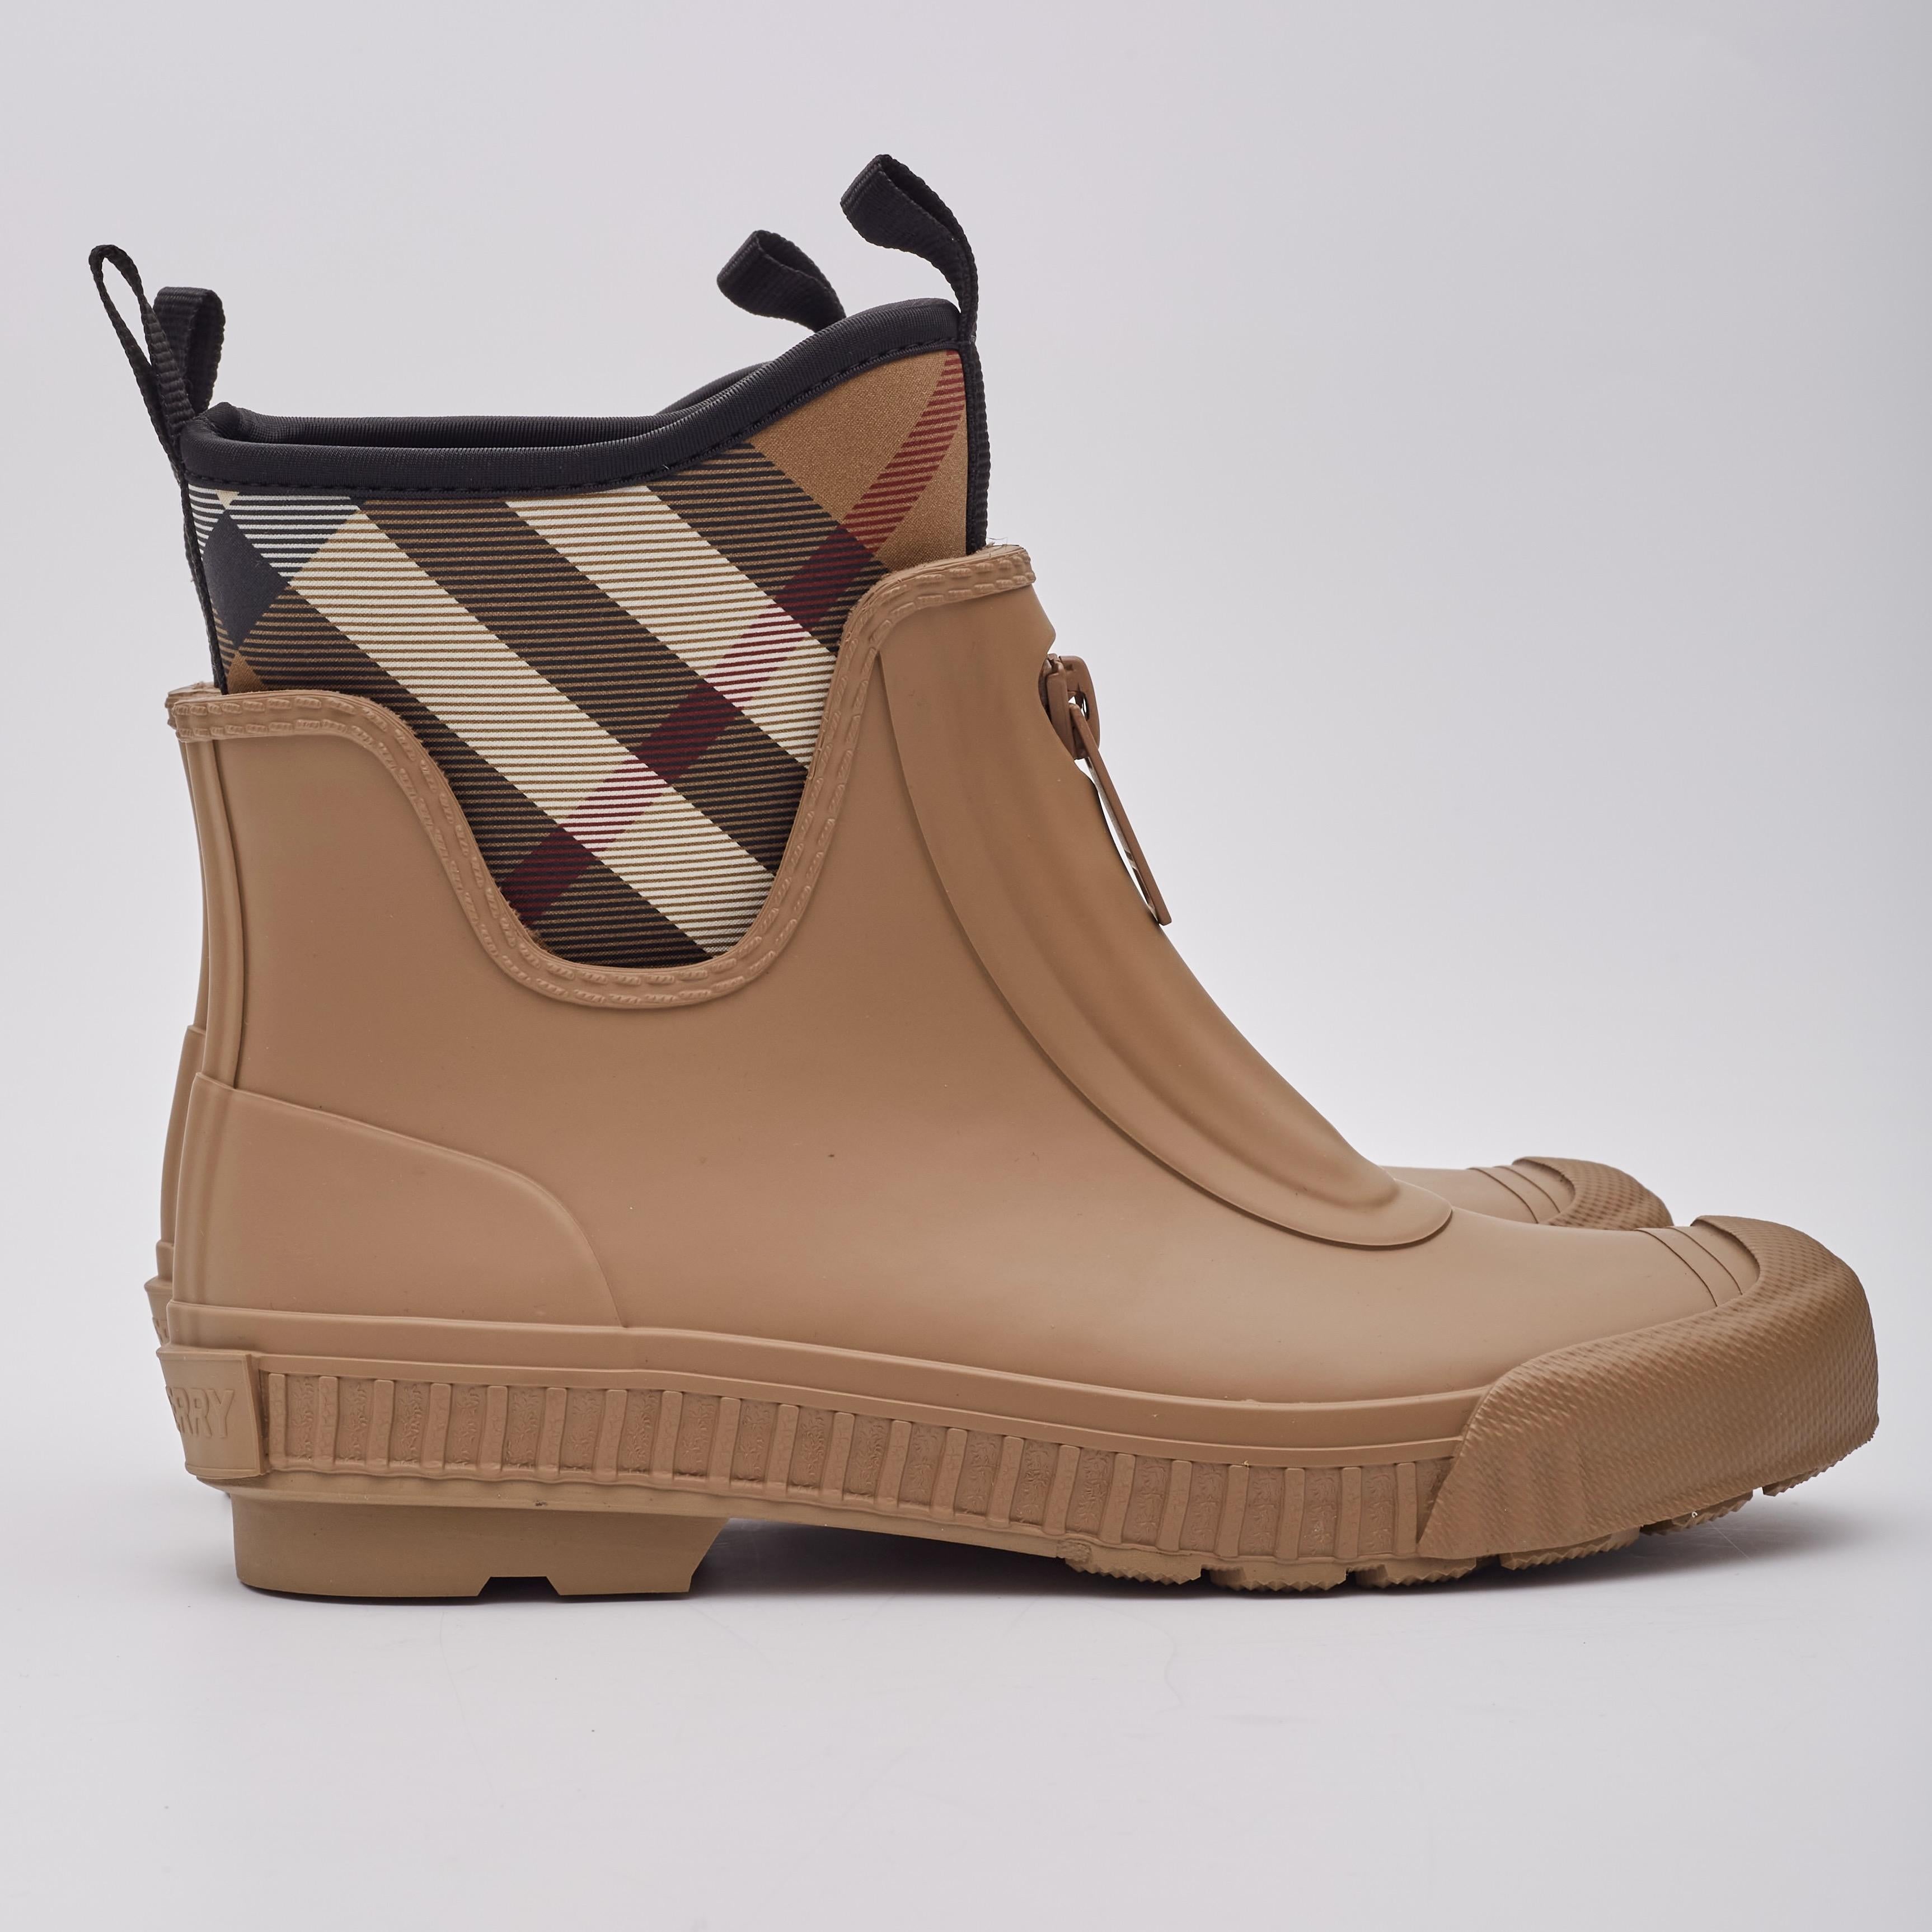 Burberry Rubber & Neoprene Check Brown Rain Boots (38 EU) For Sale 3